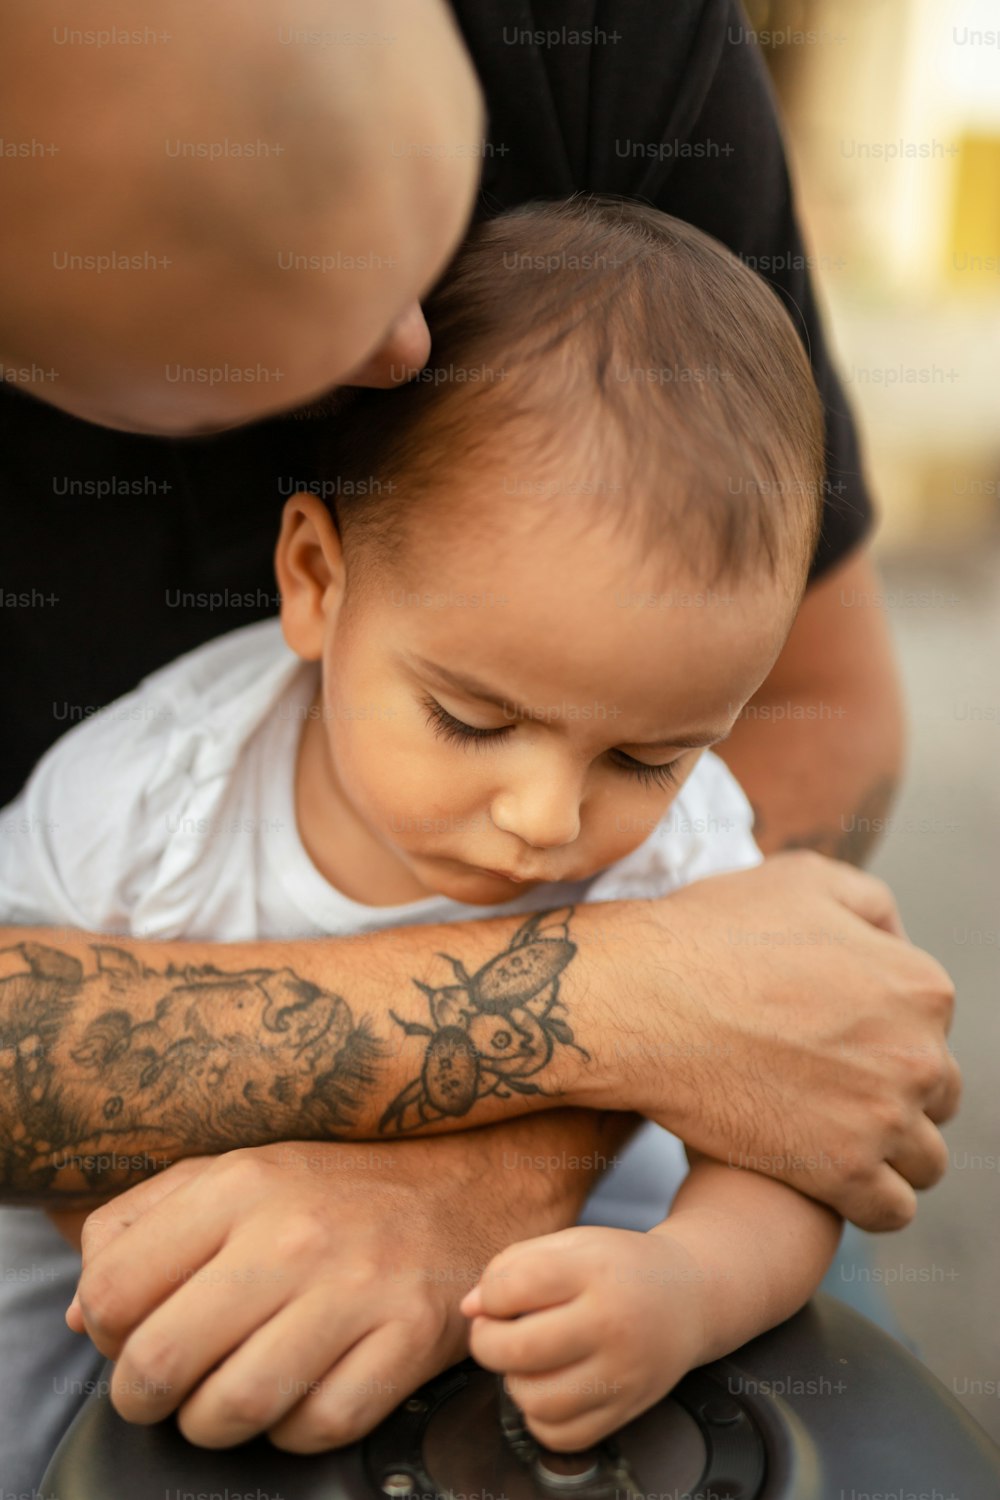 팔에 문신이 있는 아기를 안고 있는 남자